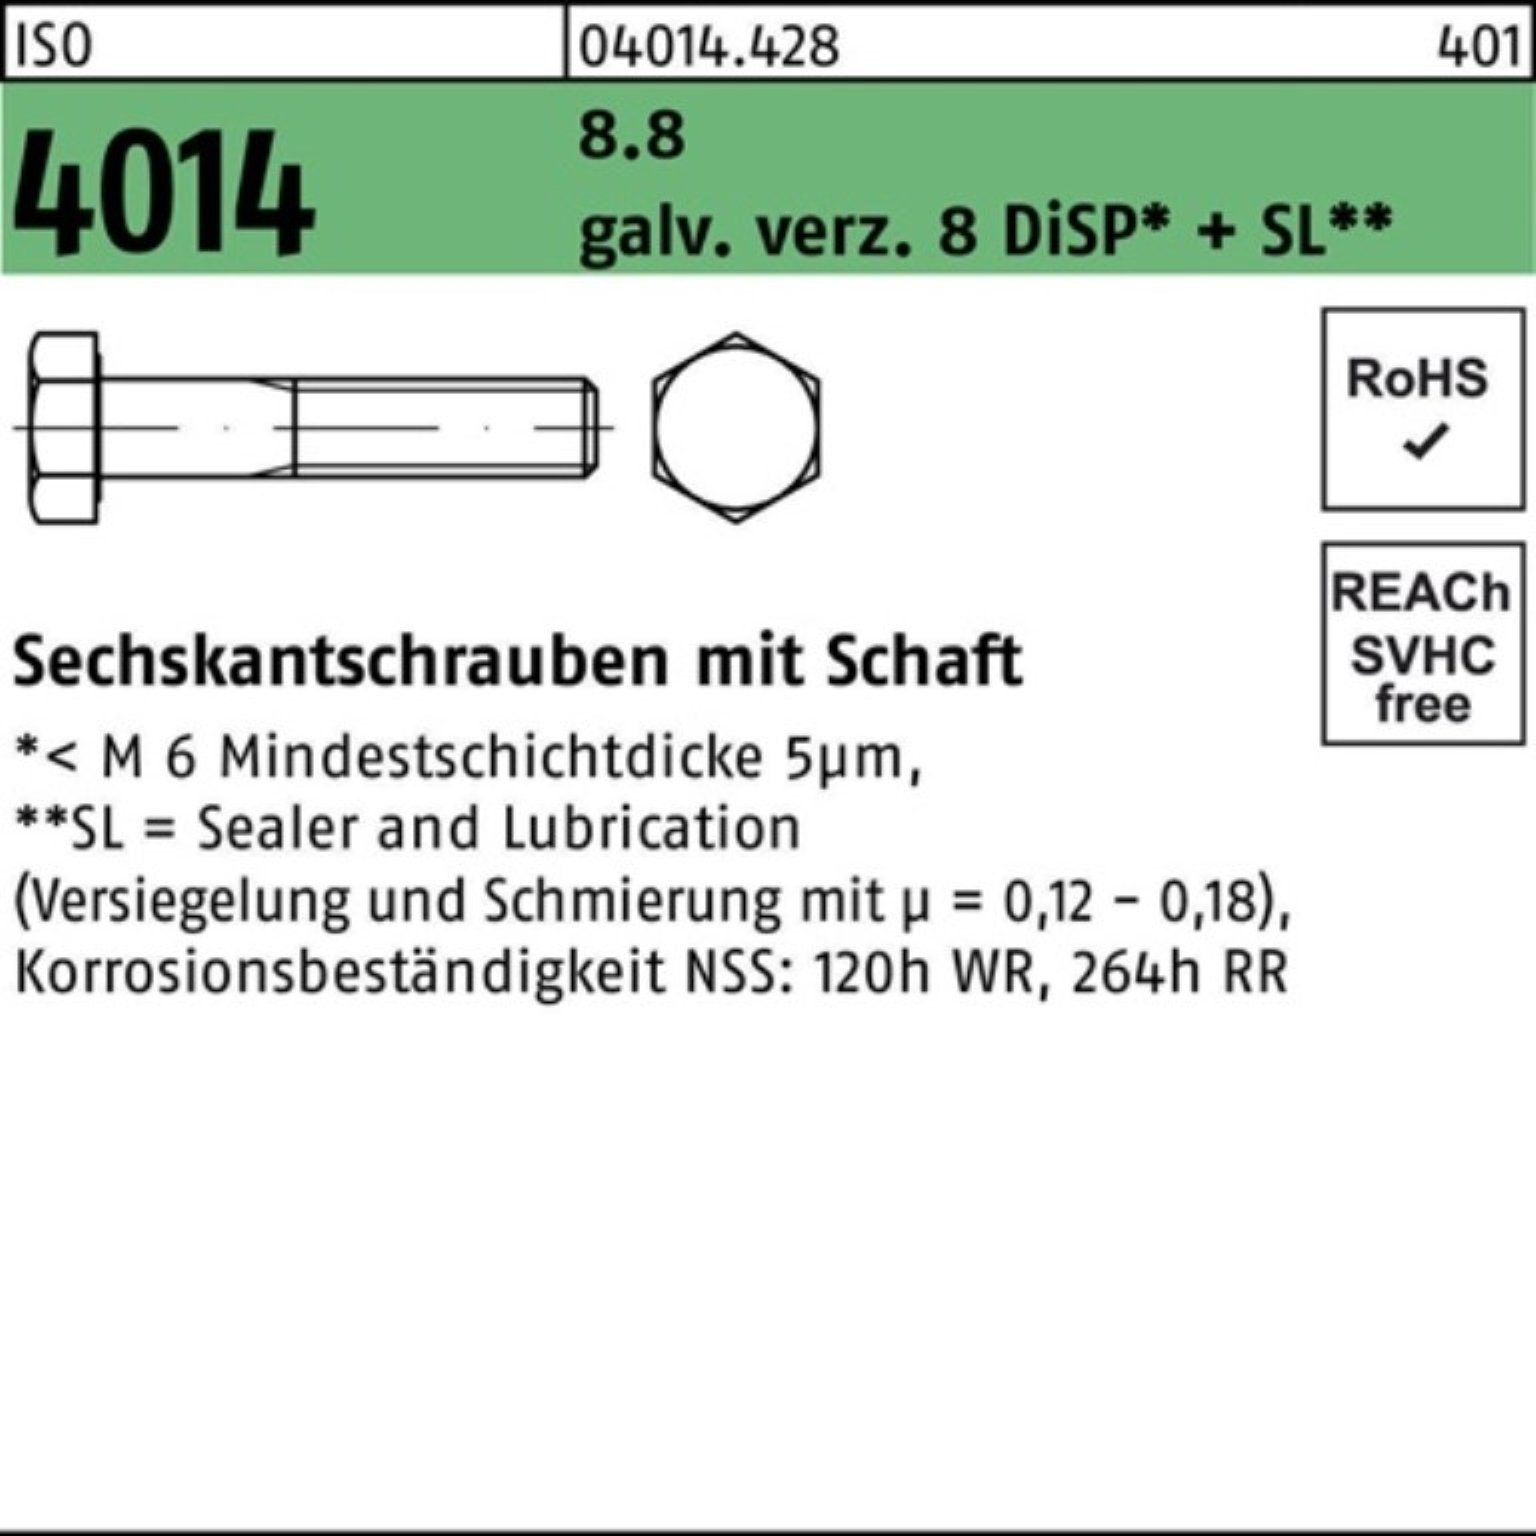 Bufab Sechskantschraube 100er Schaft galv.verz. Sechskantschraube ISO 8.8 4014 Pack 8 M24x120